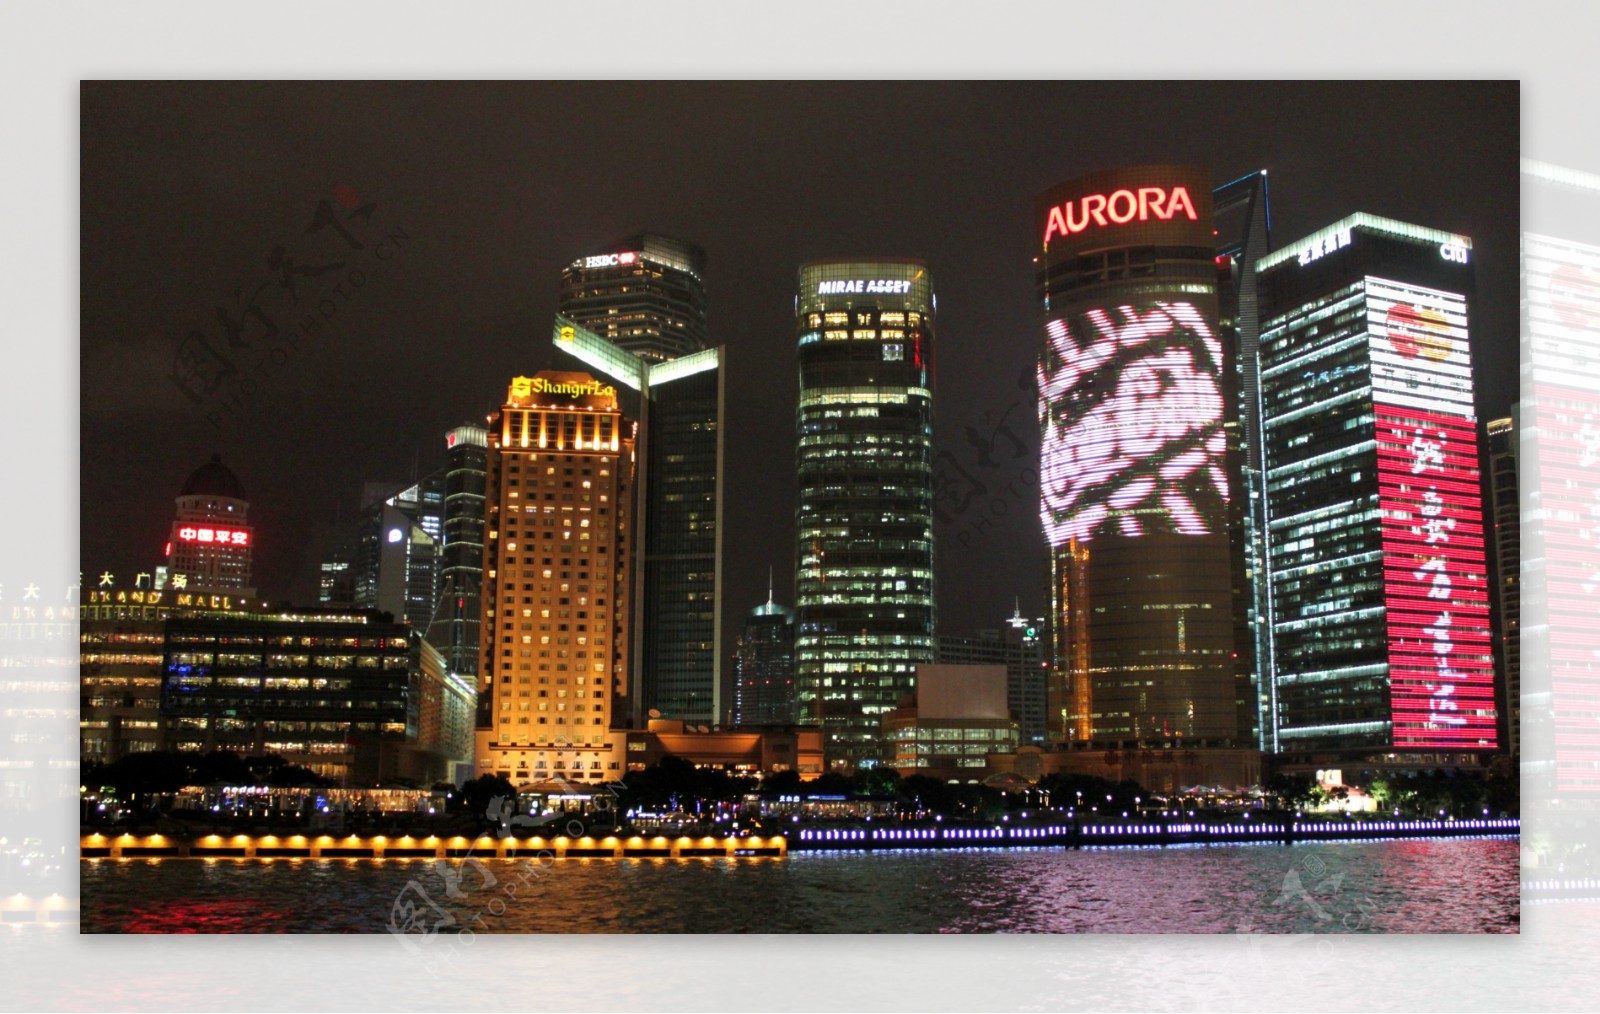 上海滩夜景图片